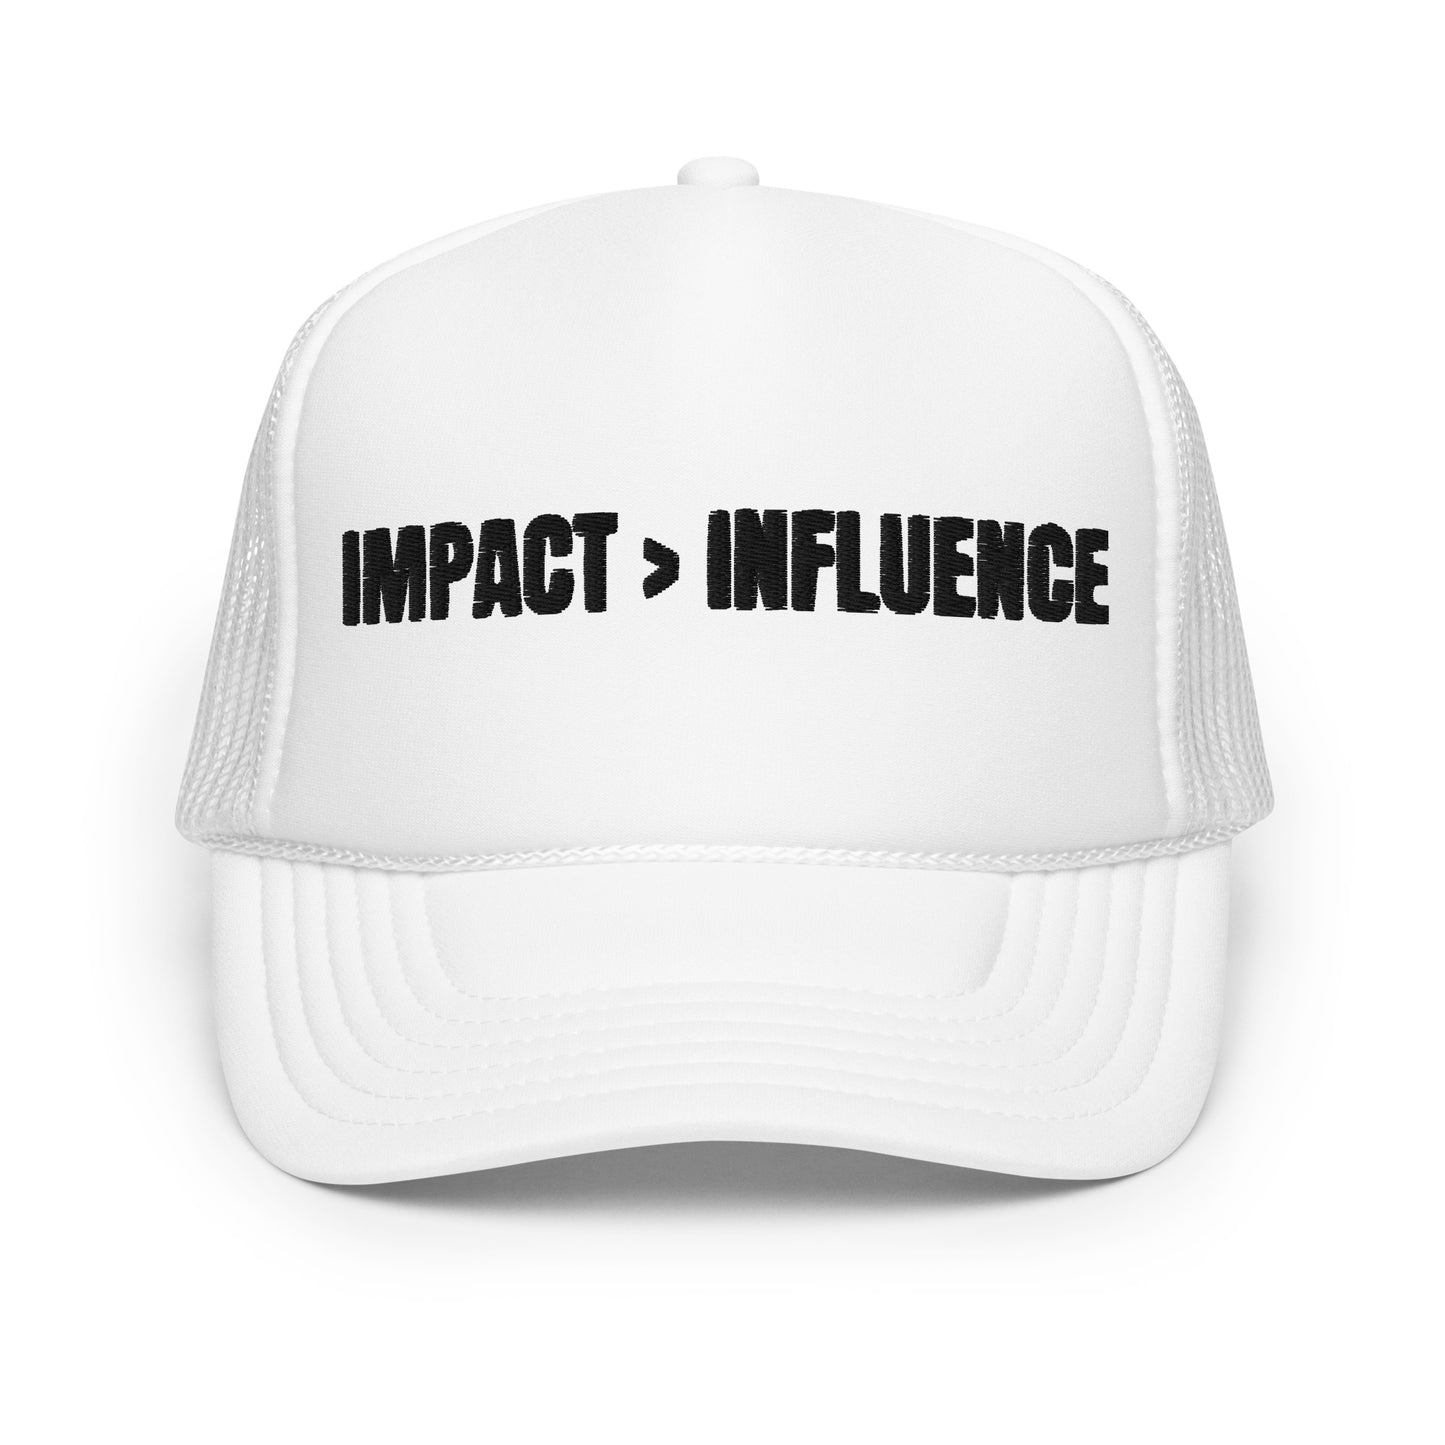 IMPACT > INFLUENCE Foam trucker hat